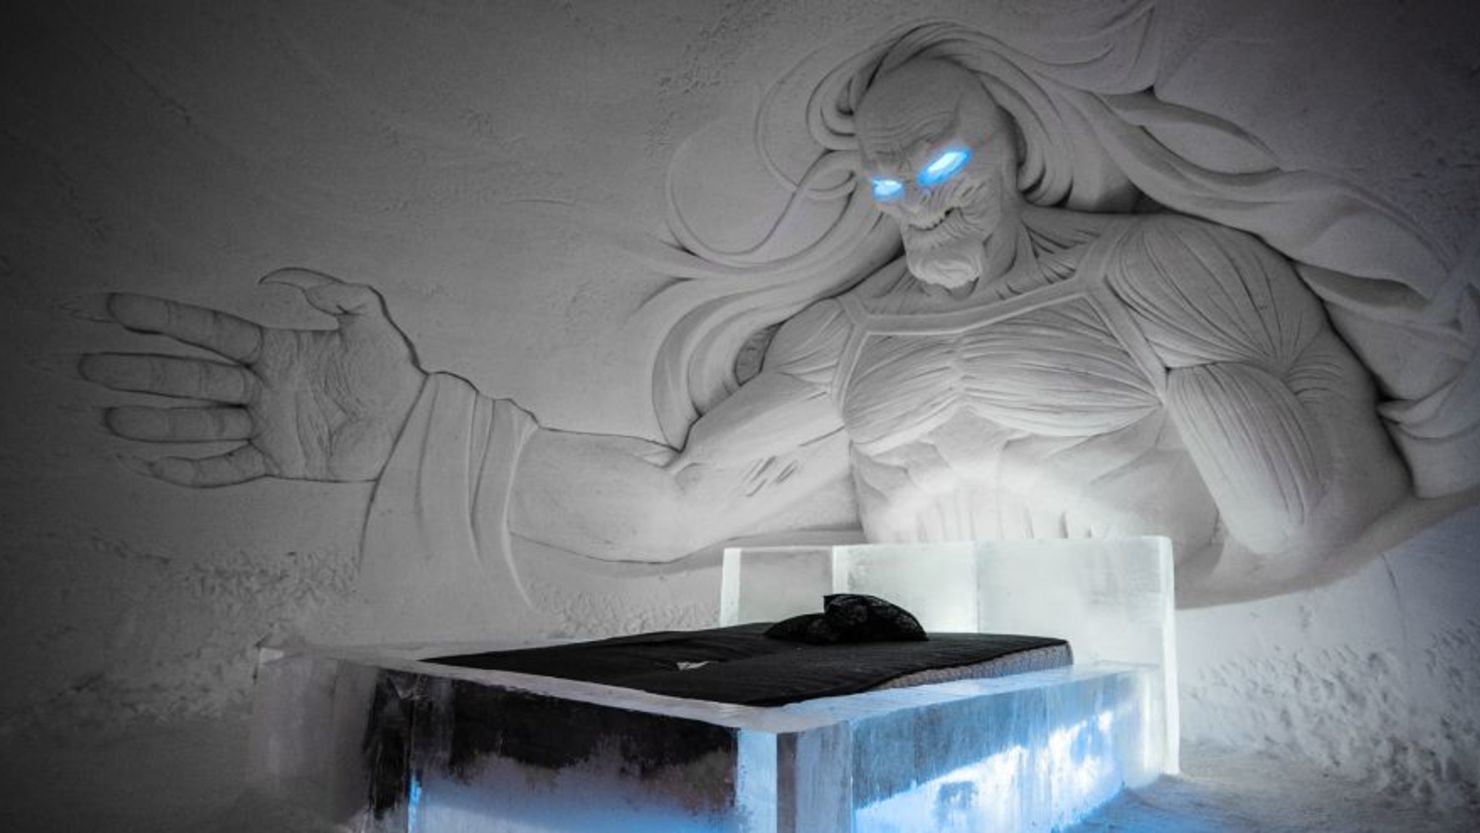 Experiencia en el Ártico: en cada habitación hay una figura de hielo que hace alusión a la famosa serie de televisión, como este White Walker, que parece de pesadilla.